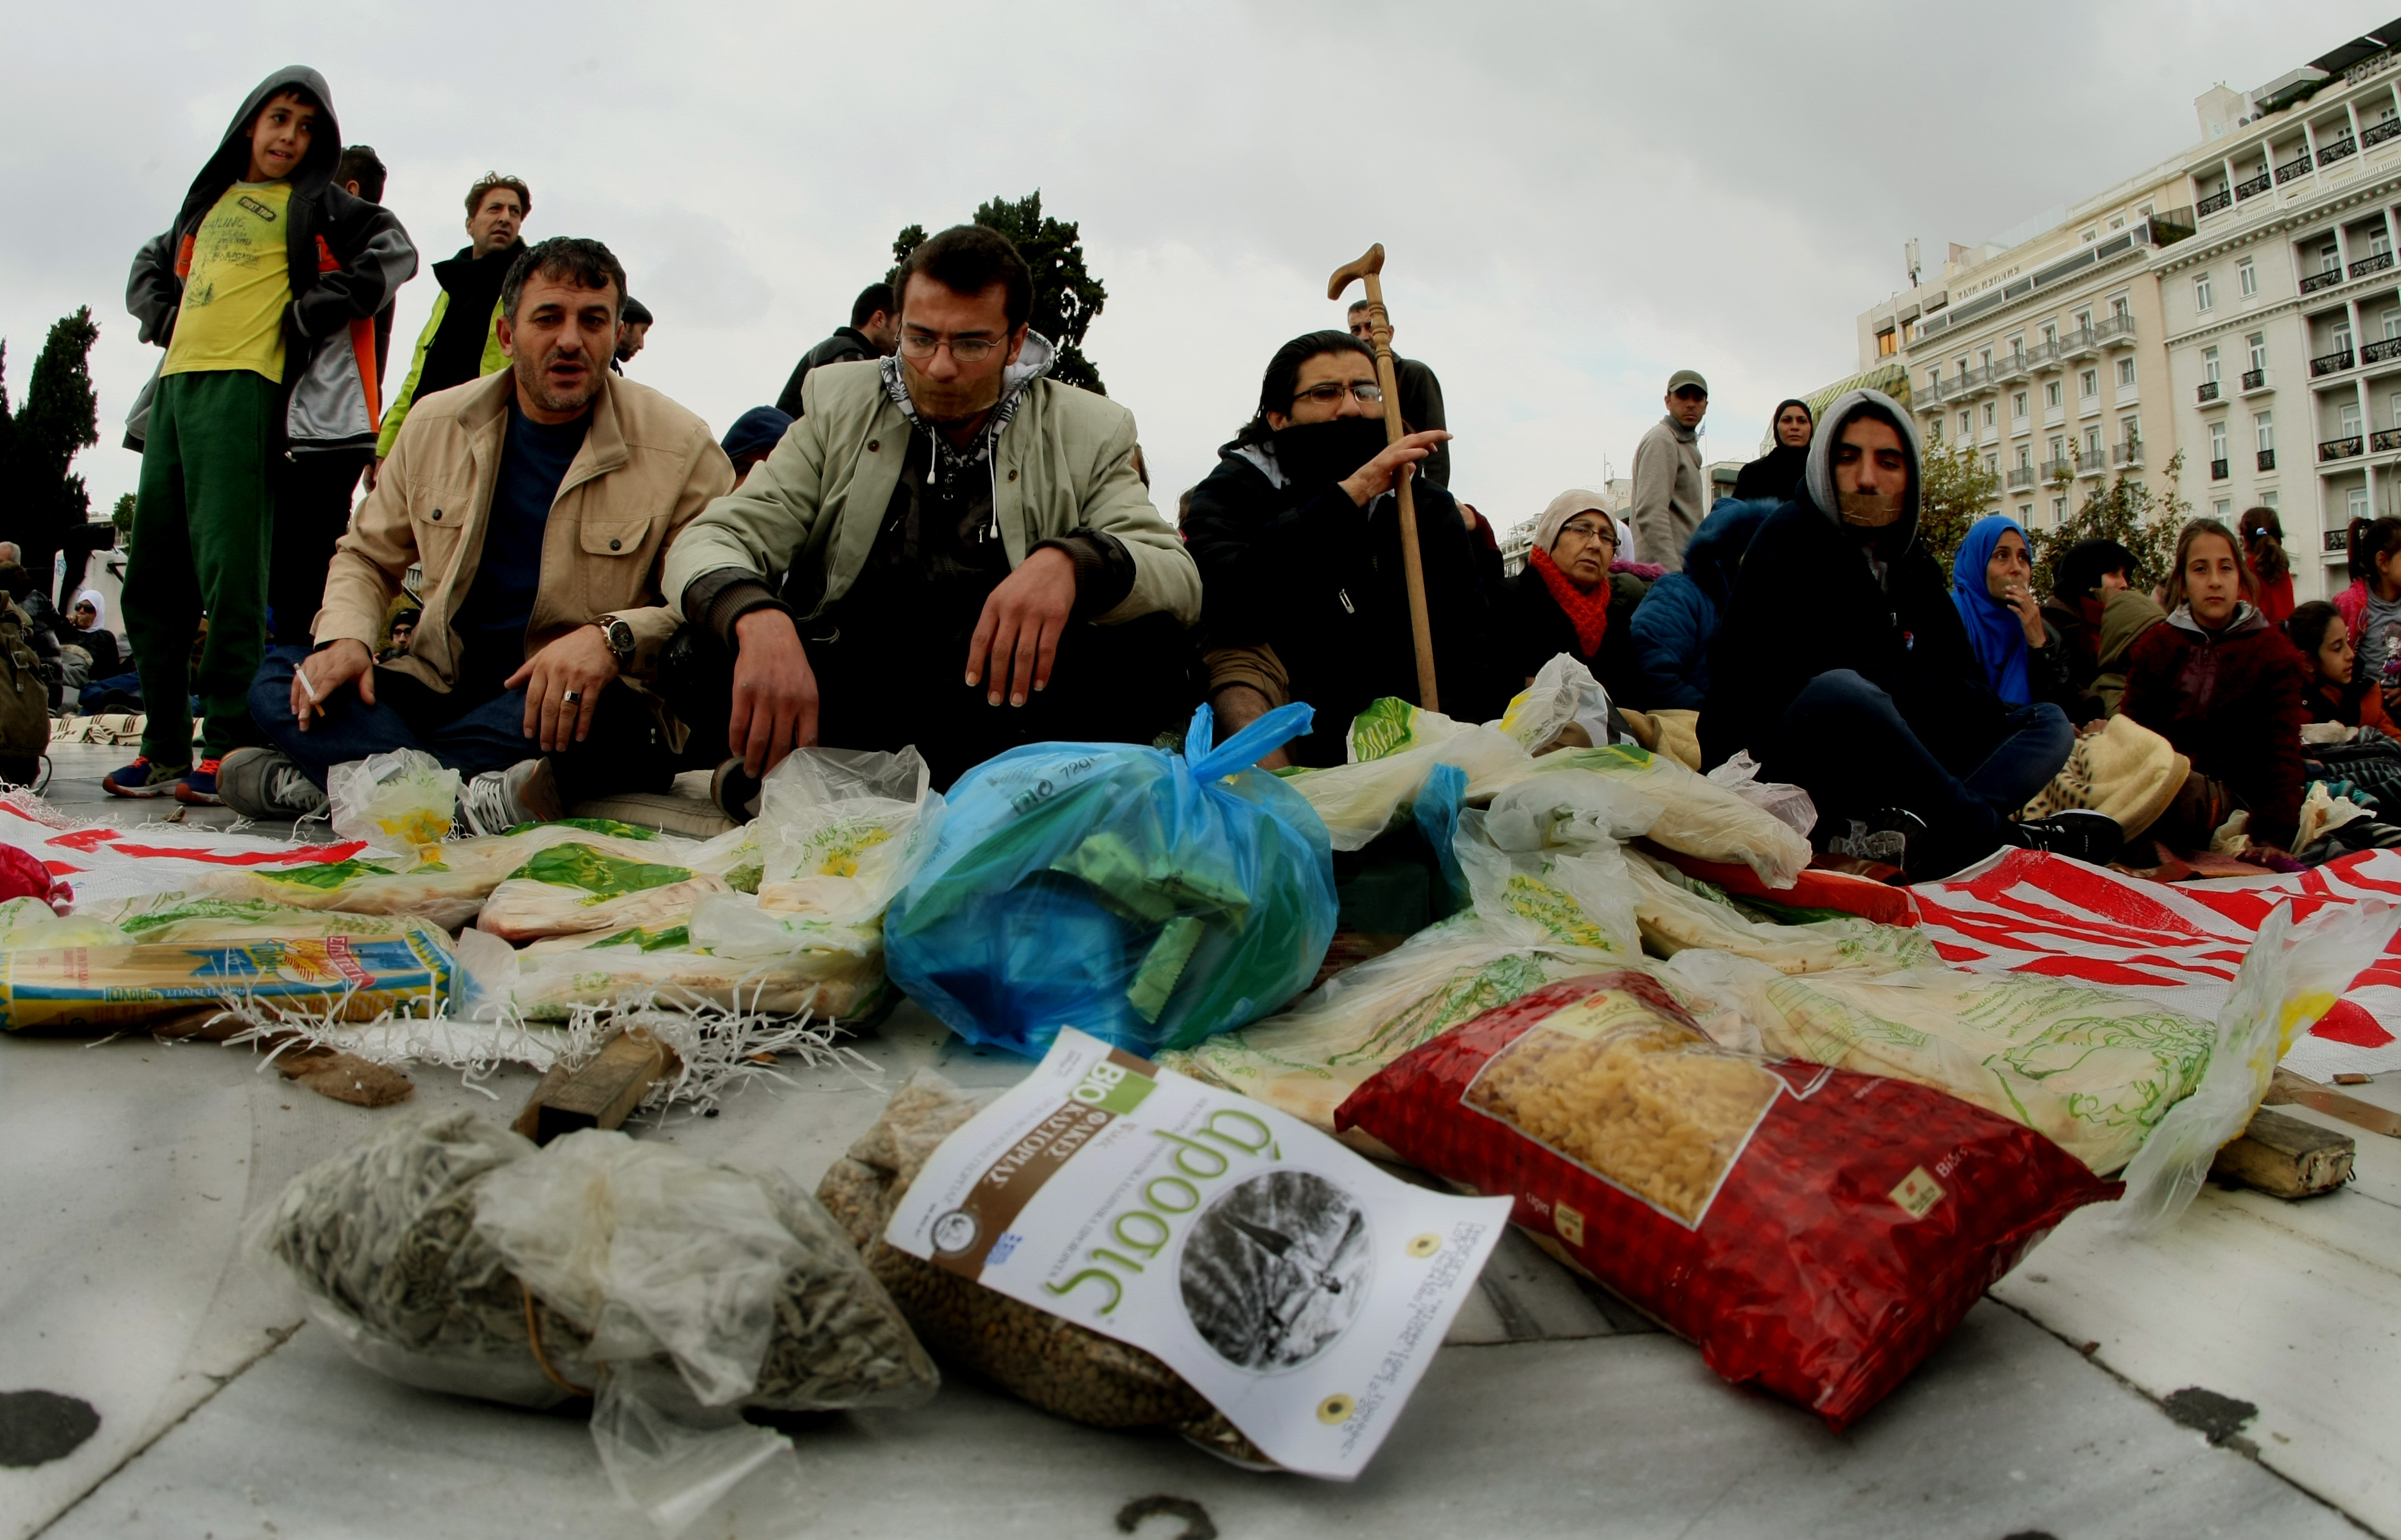 Βούλτεψη:Κλήθηκαν να καταγραφούν οι Σύροι πρόσφυγες αλλά δεν ήρθαν